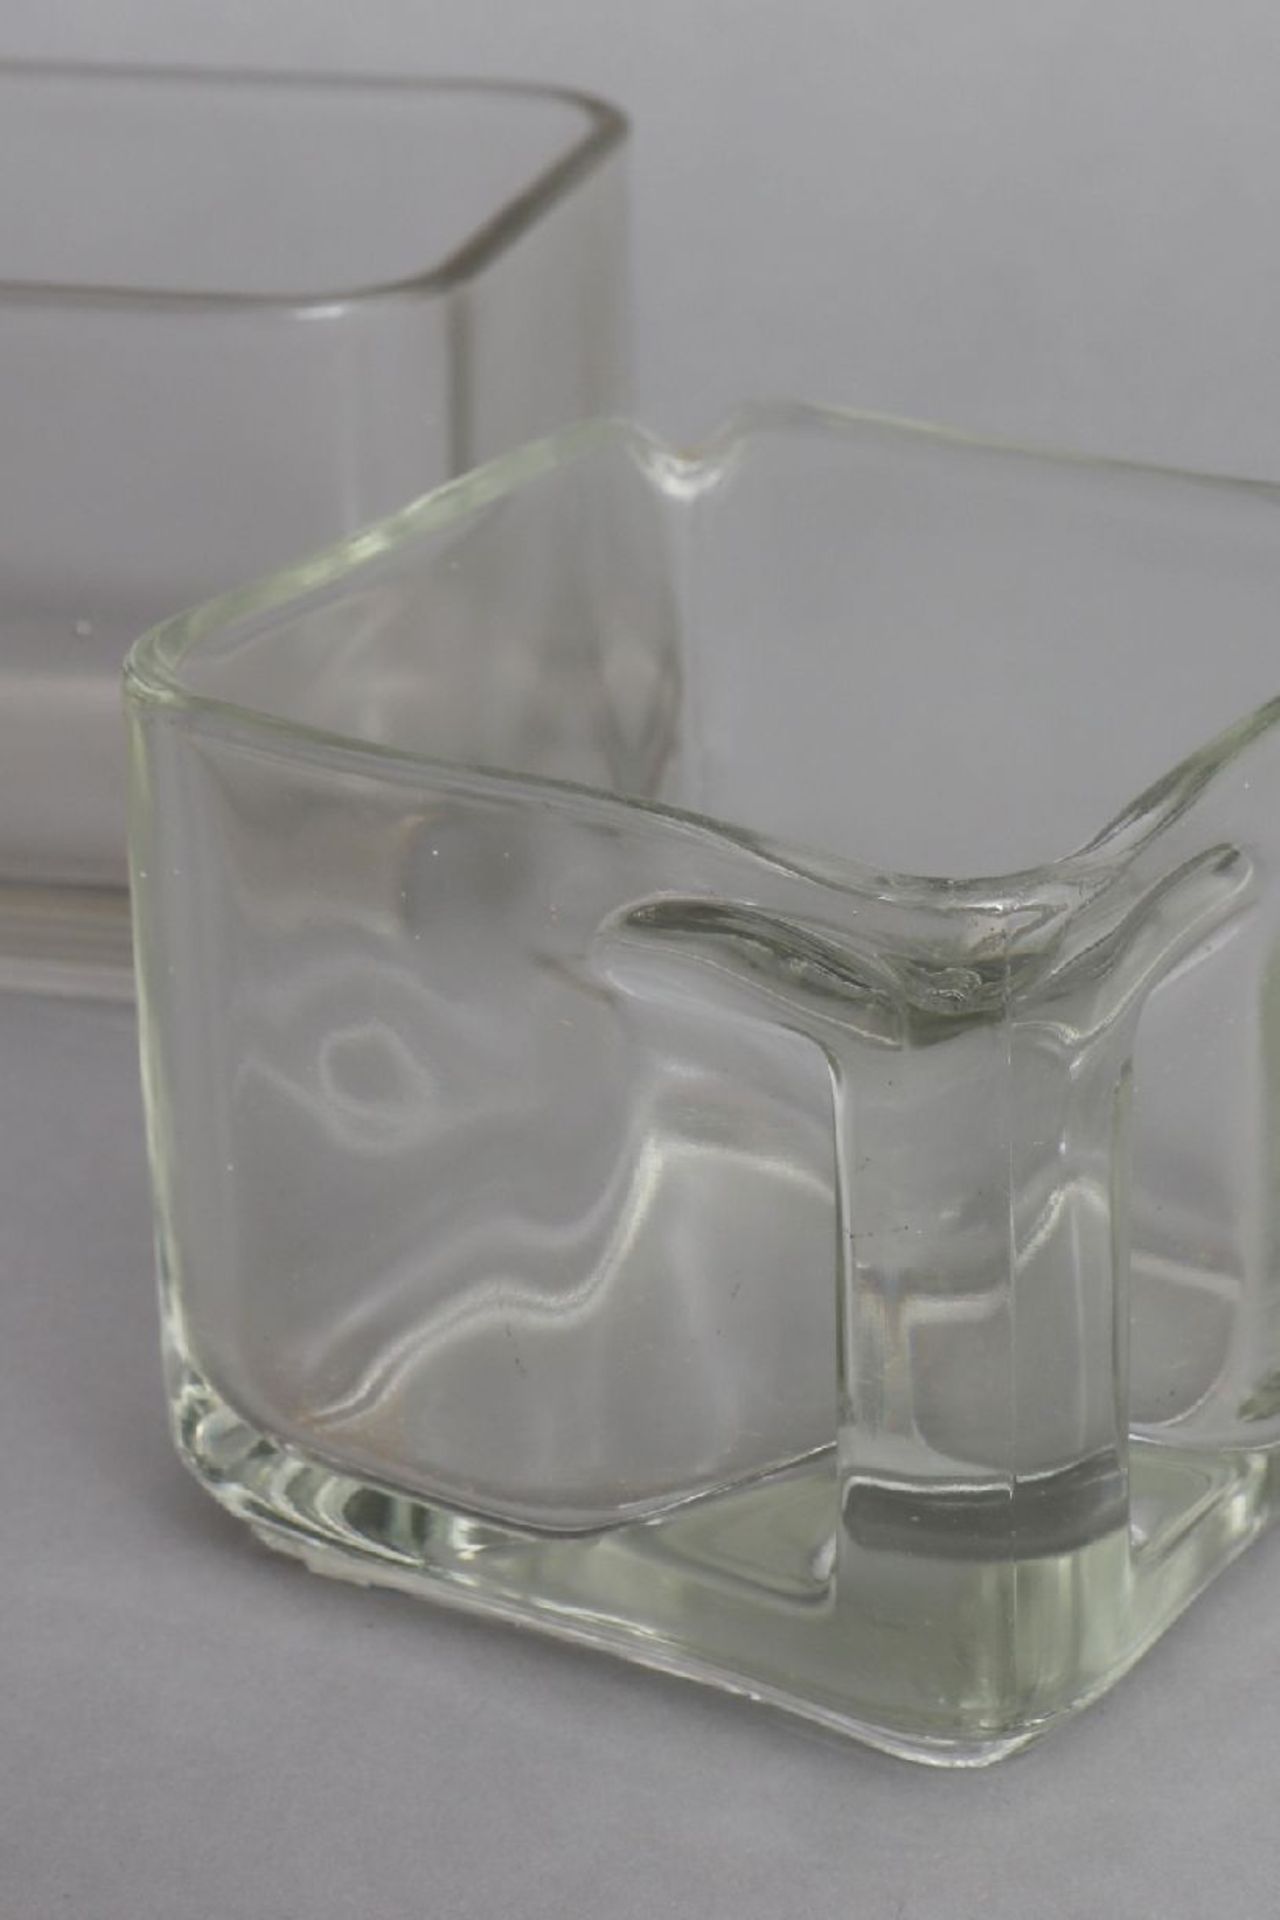 2 Teile WAGENFELD Kubus VorratsgeschirrHersteller VLG (vereinigte Lausitzer Glaswerke), Entwurf - Image 3 of 6